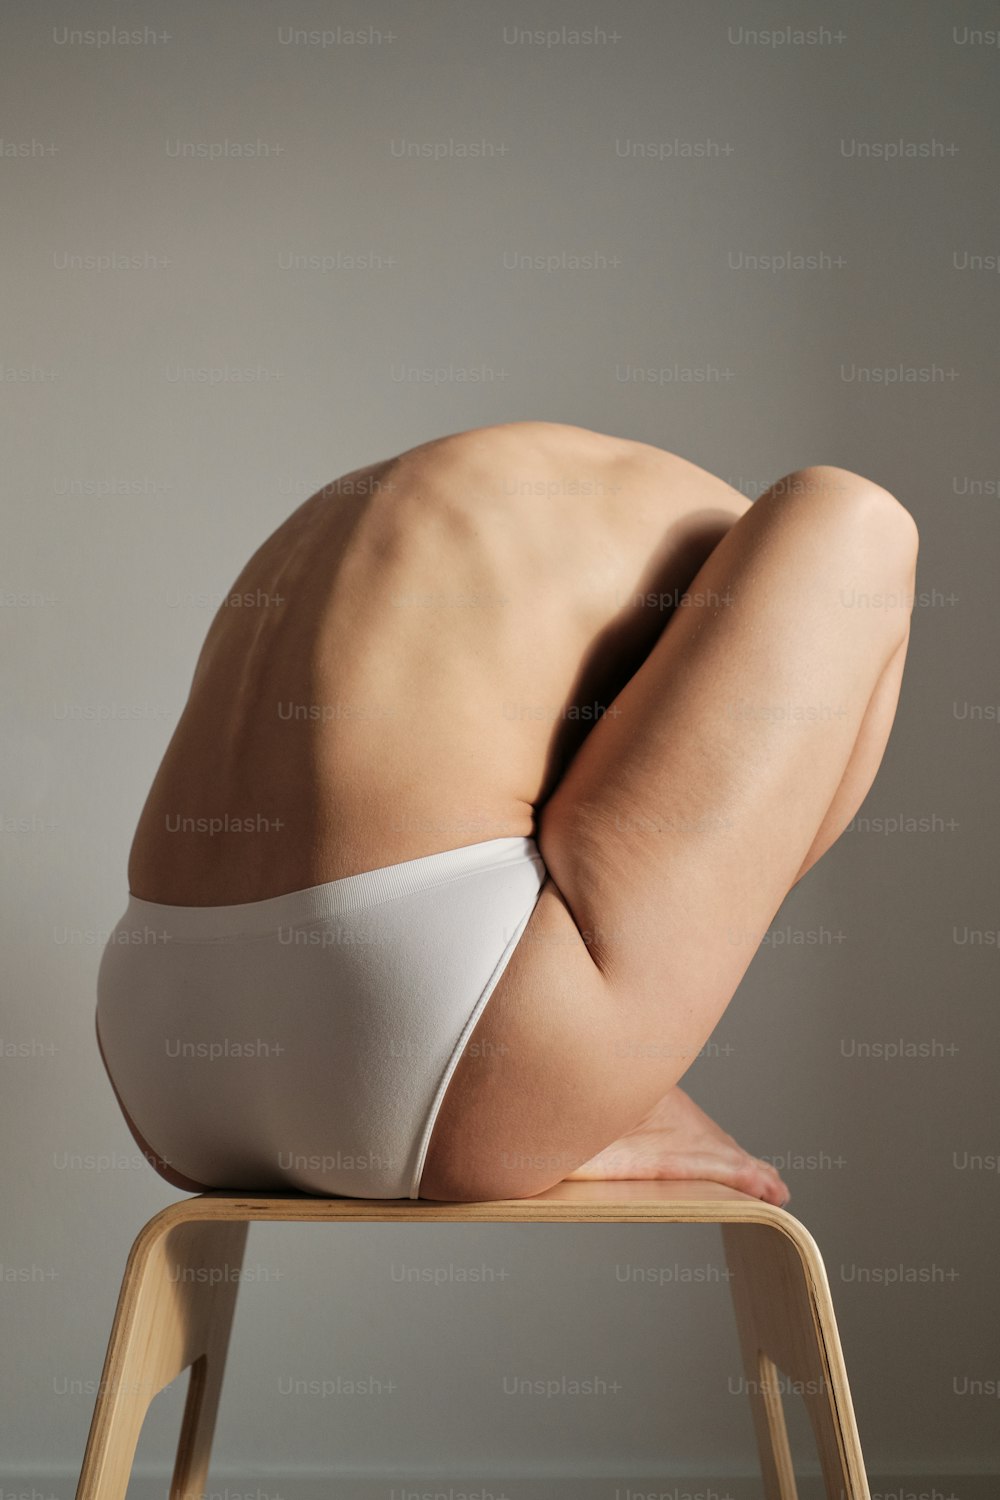 Una mujer desnuda en bikini blanco sentada en una silla de madera